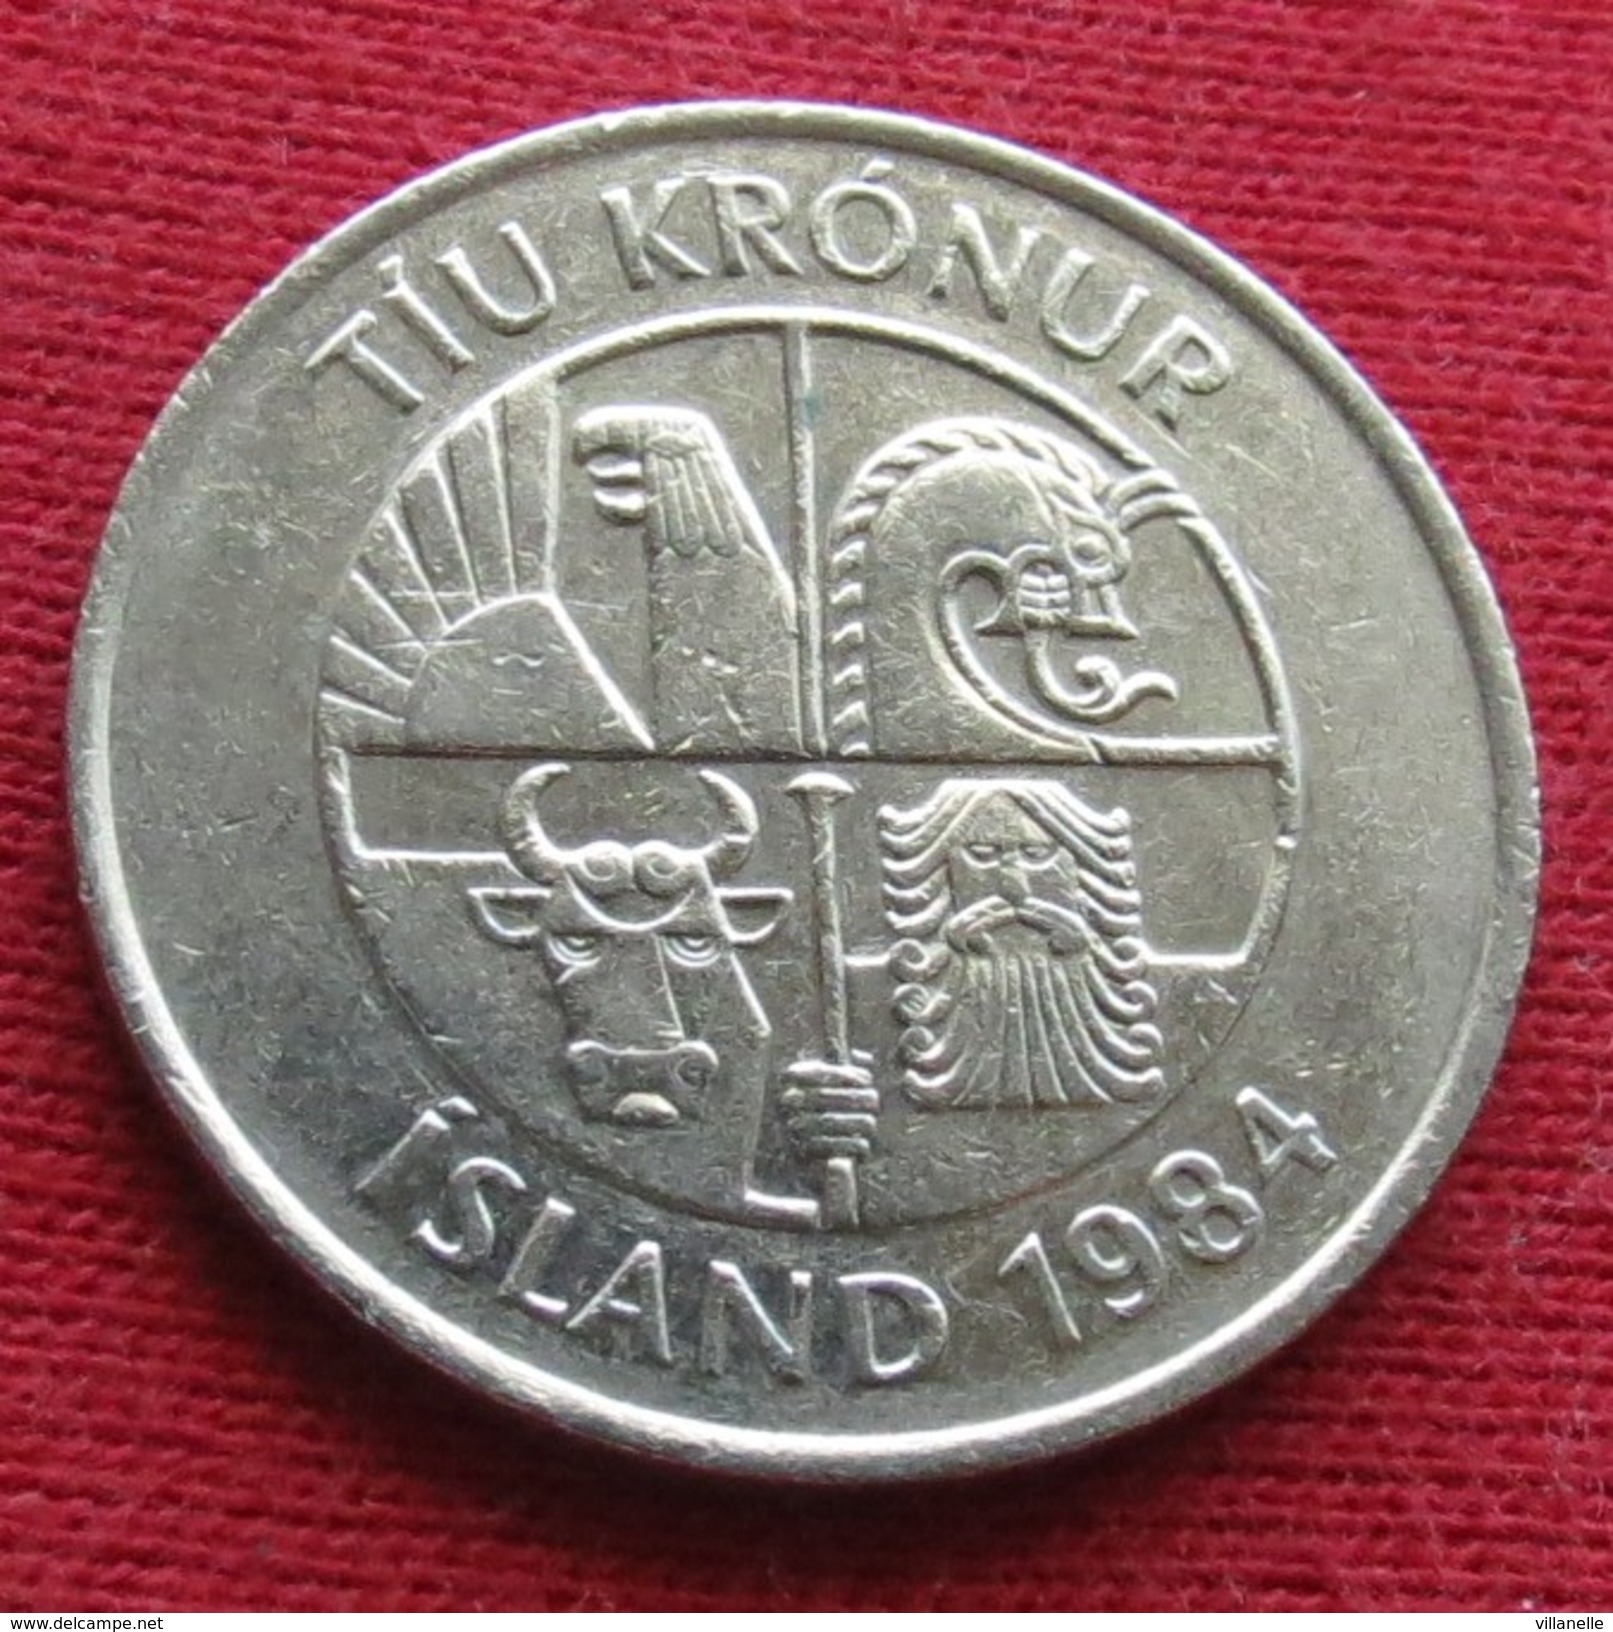 Iceland 10 Kronur 1984 KM# 29.1  Lt 380 Islande Islanda Islandia - Islandia